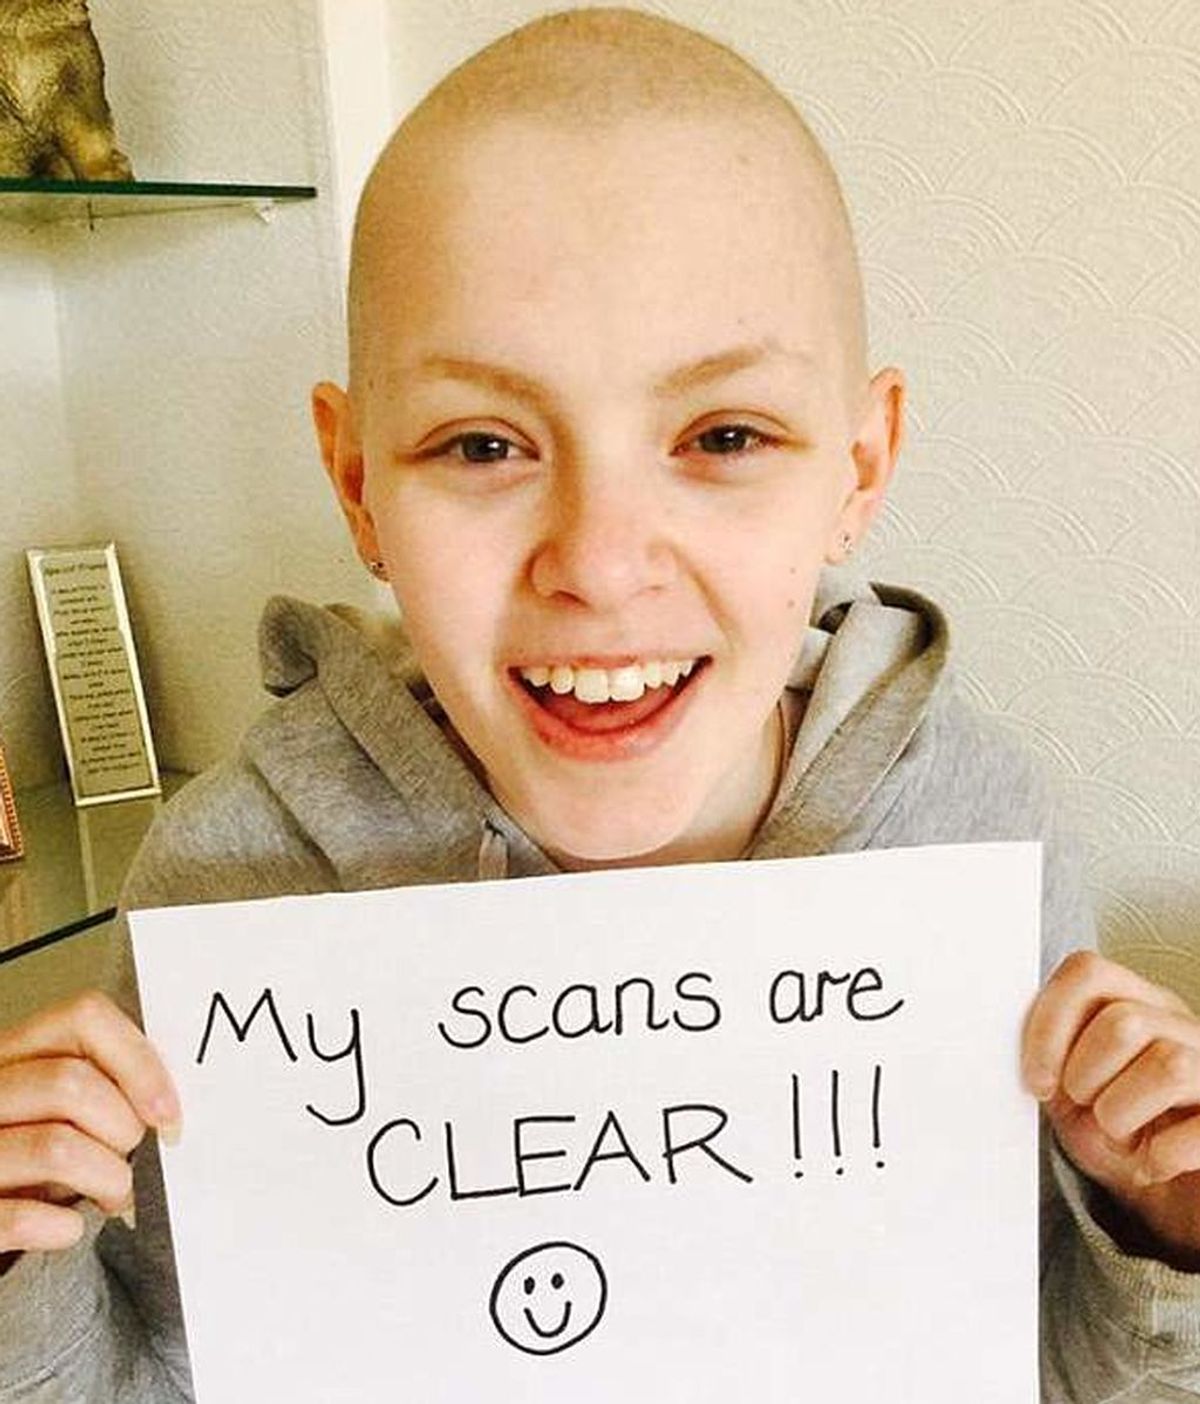 Con 14 años, recibe las donaciones suficientes para operarse después de 3 años luchando contra el cáncer